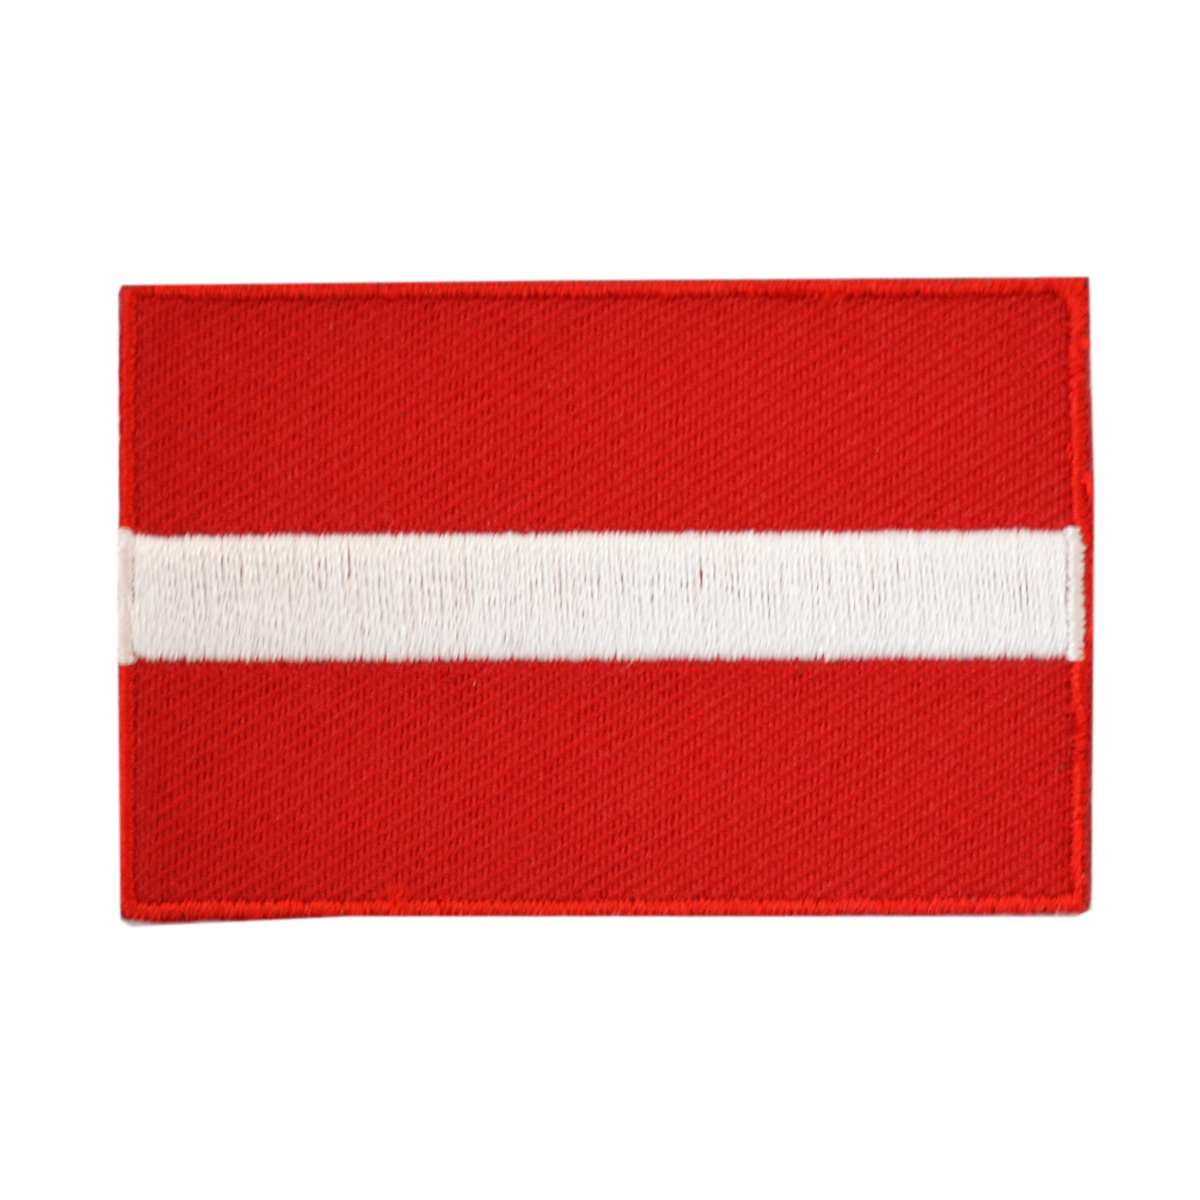 Latvia - Flag-badges.com